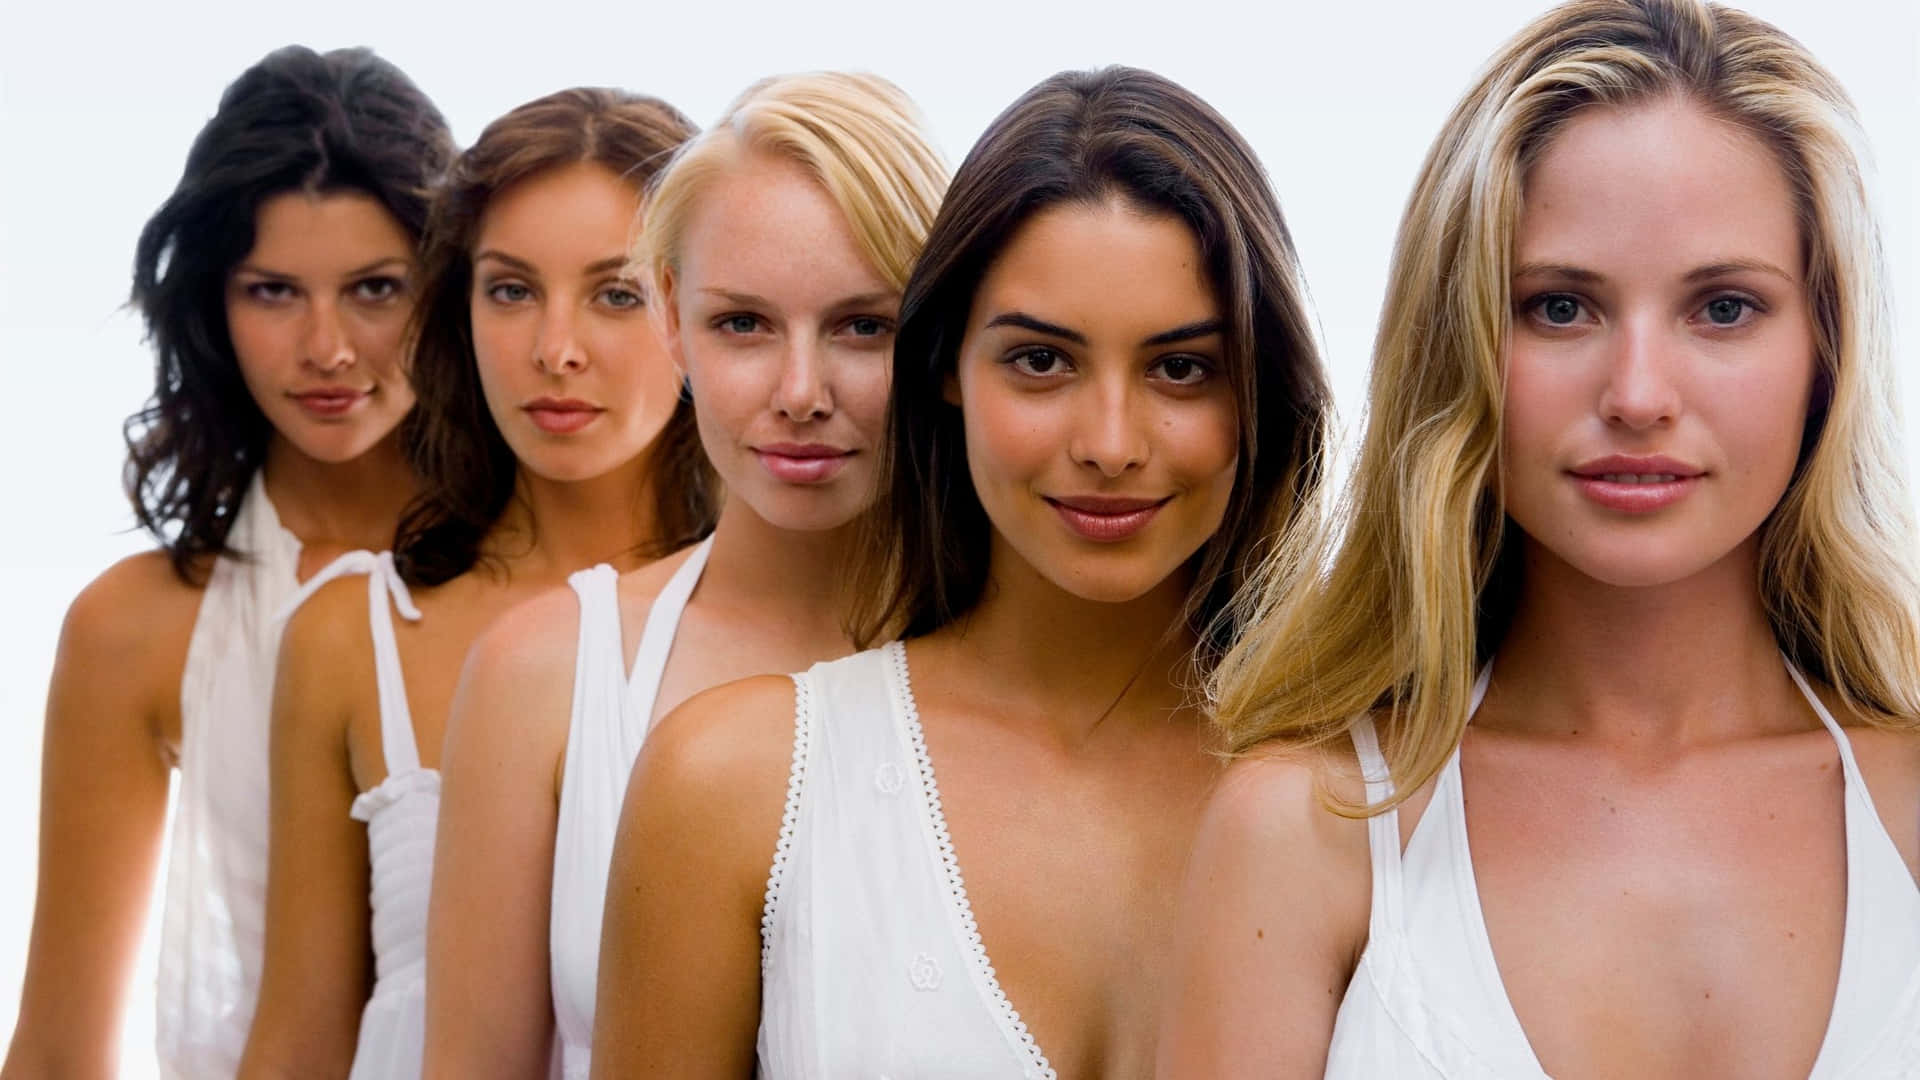 Einegruppe Von Frauen In Weißen Oberteilen Posiert Für Ein Foto.